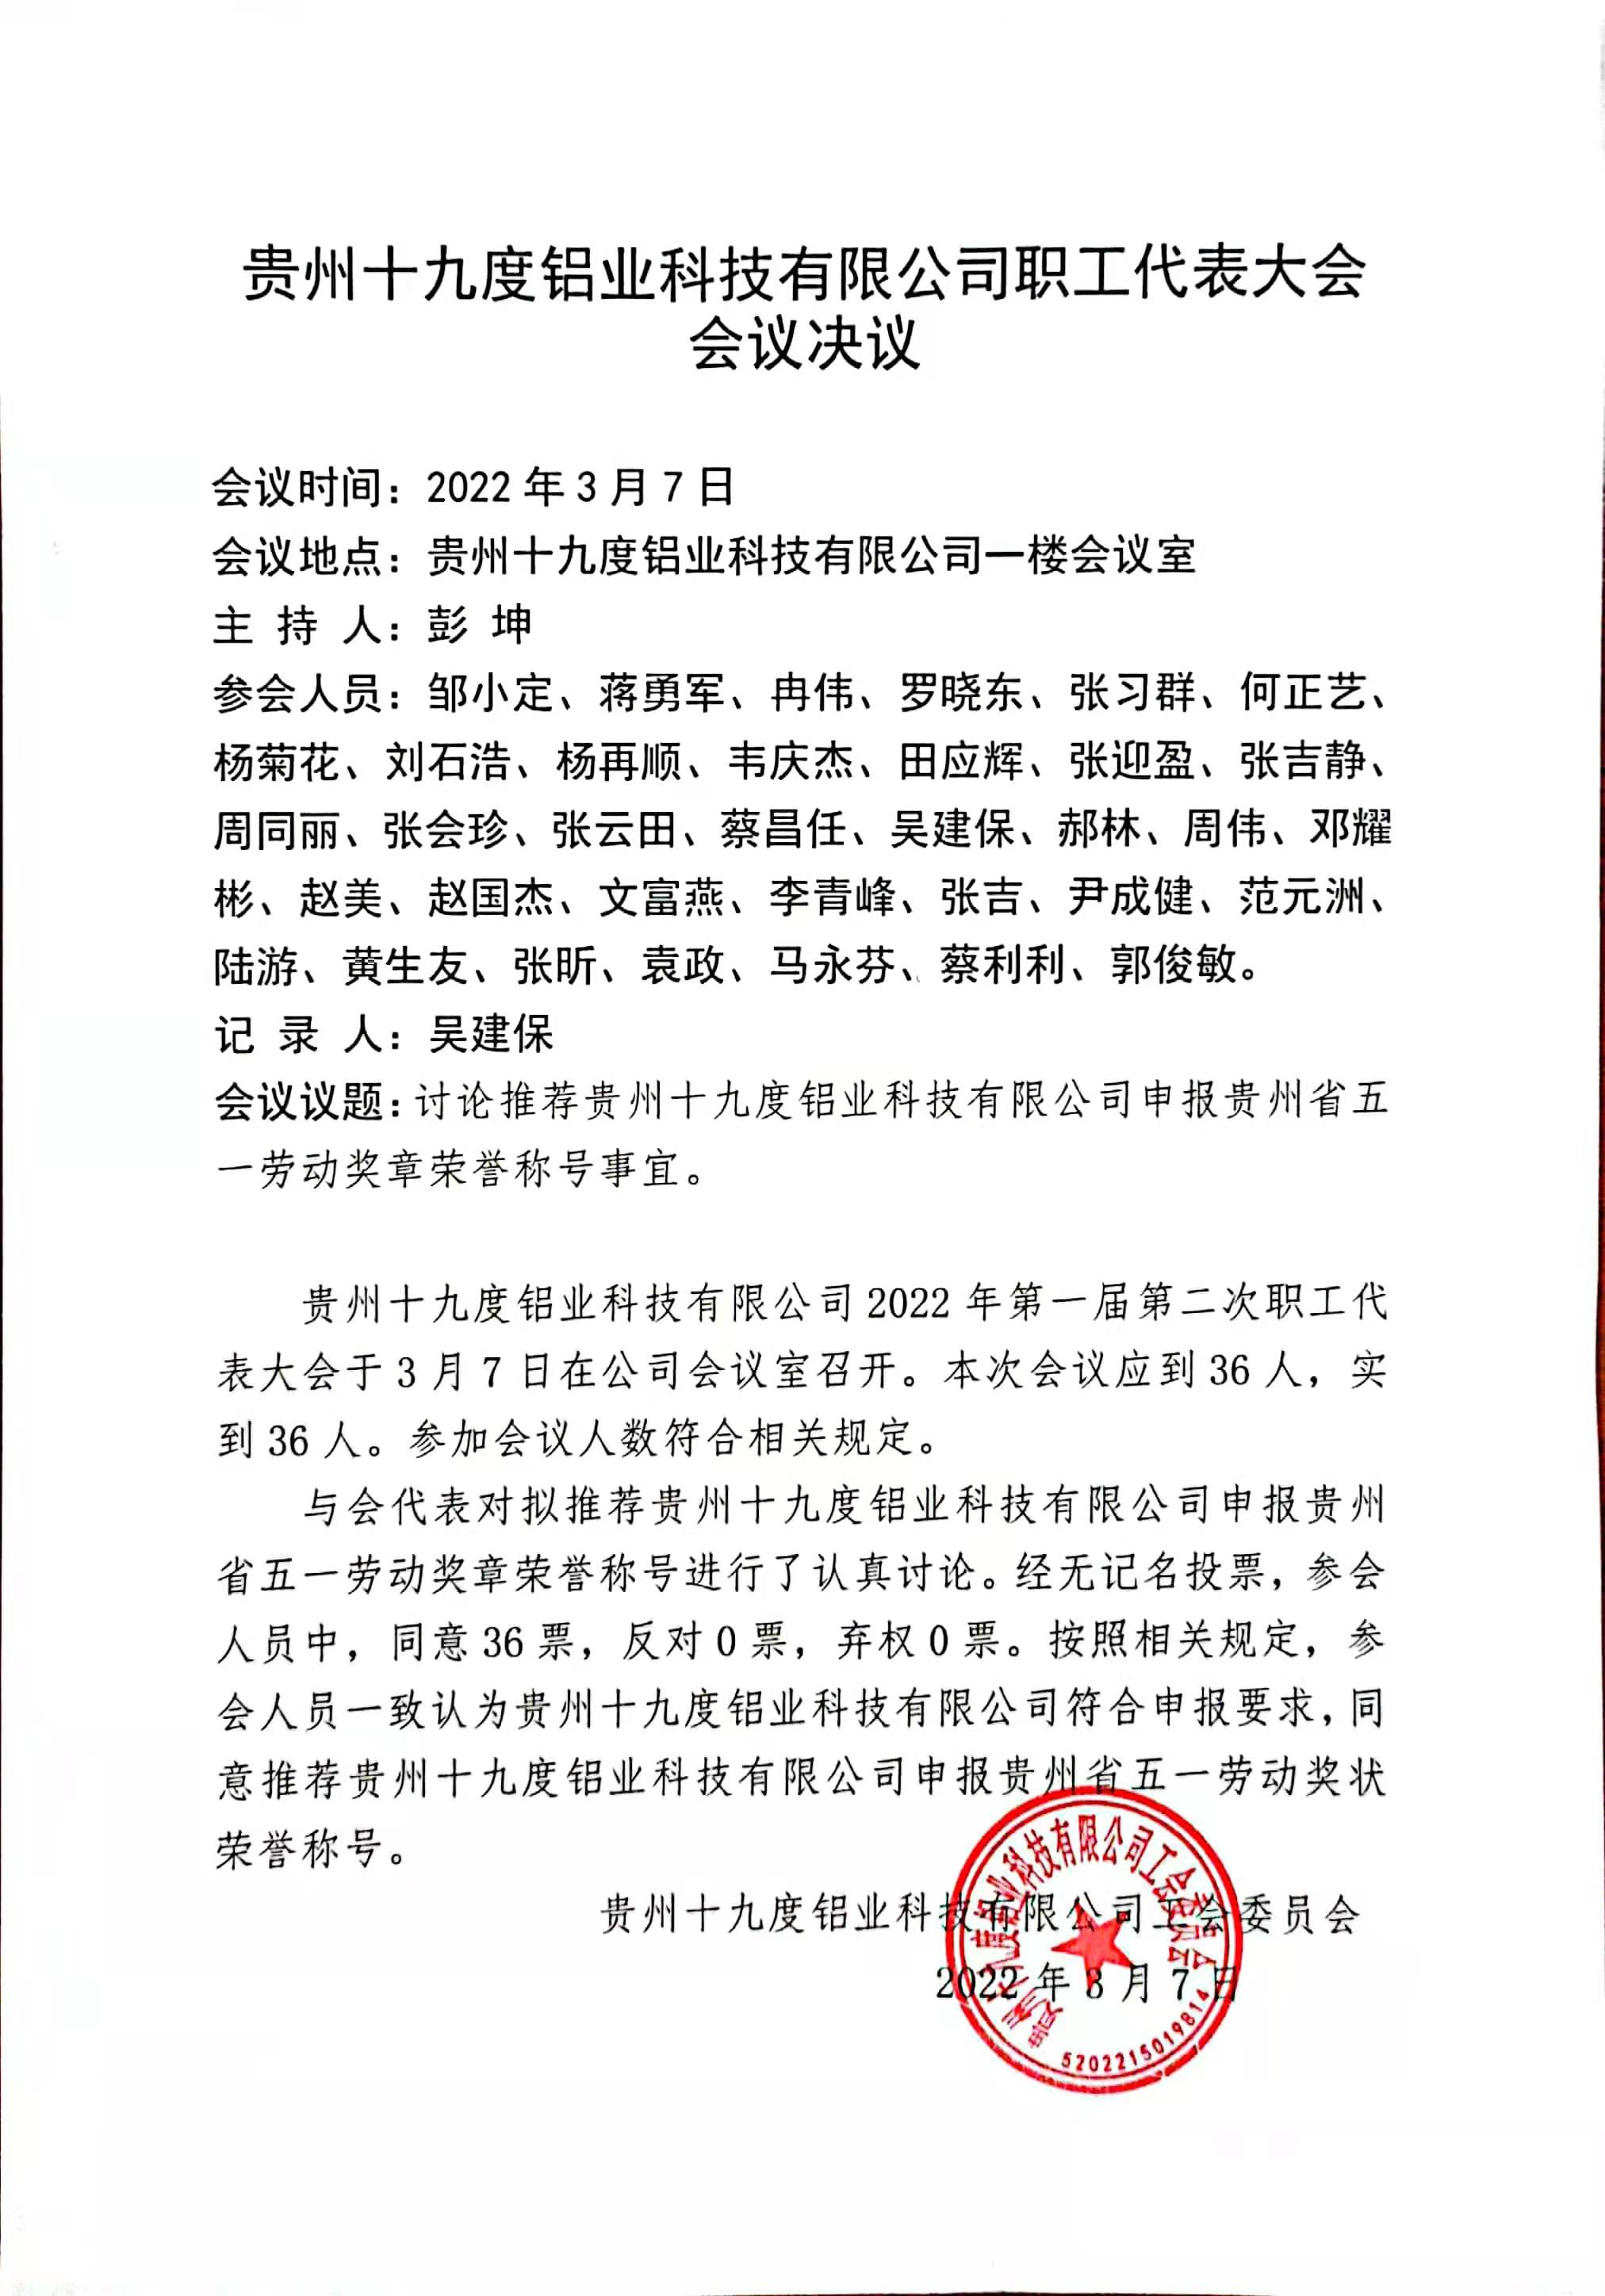 贵州十九度铝业科技有限公司召开职工代表大会